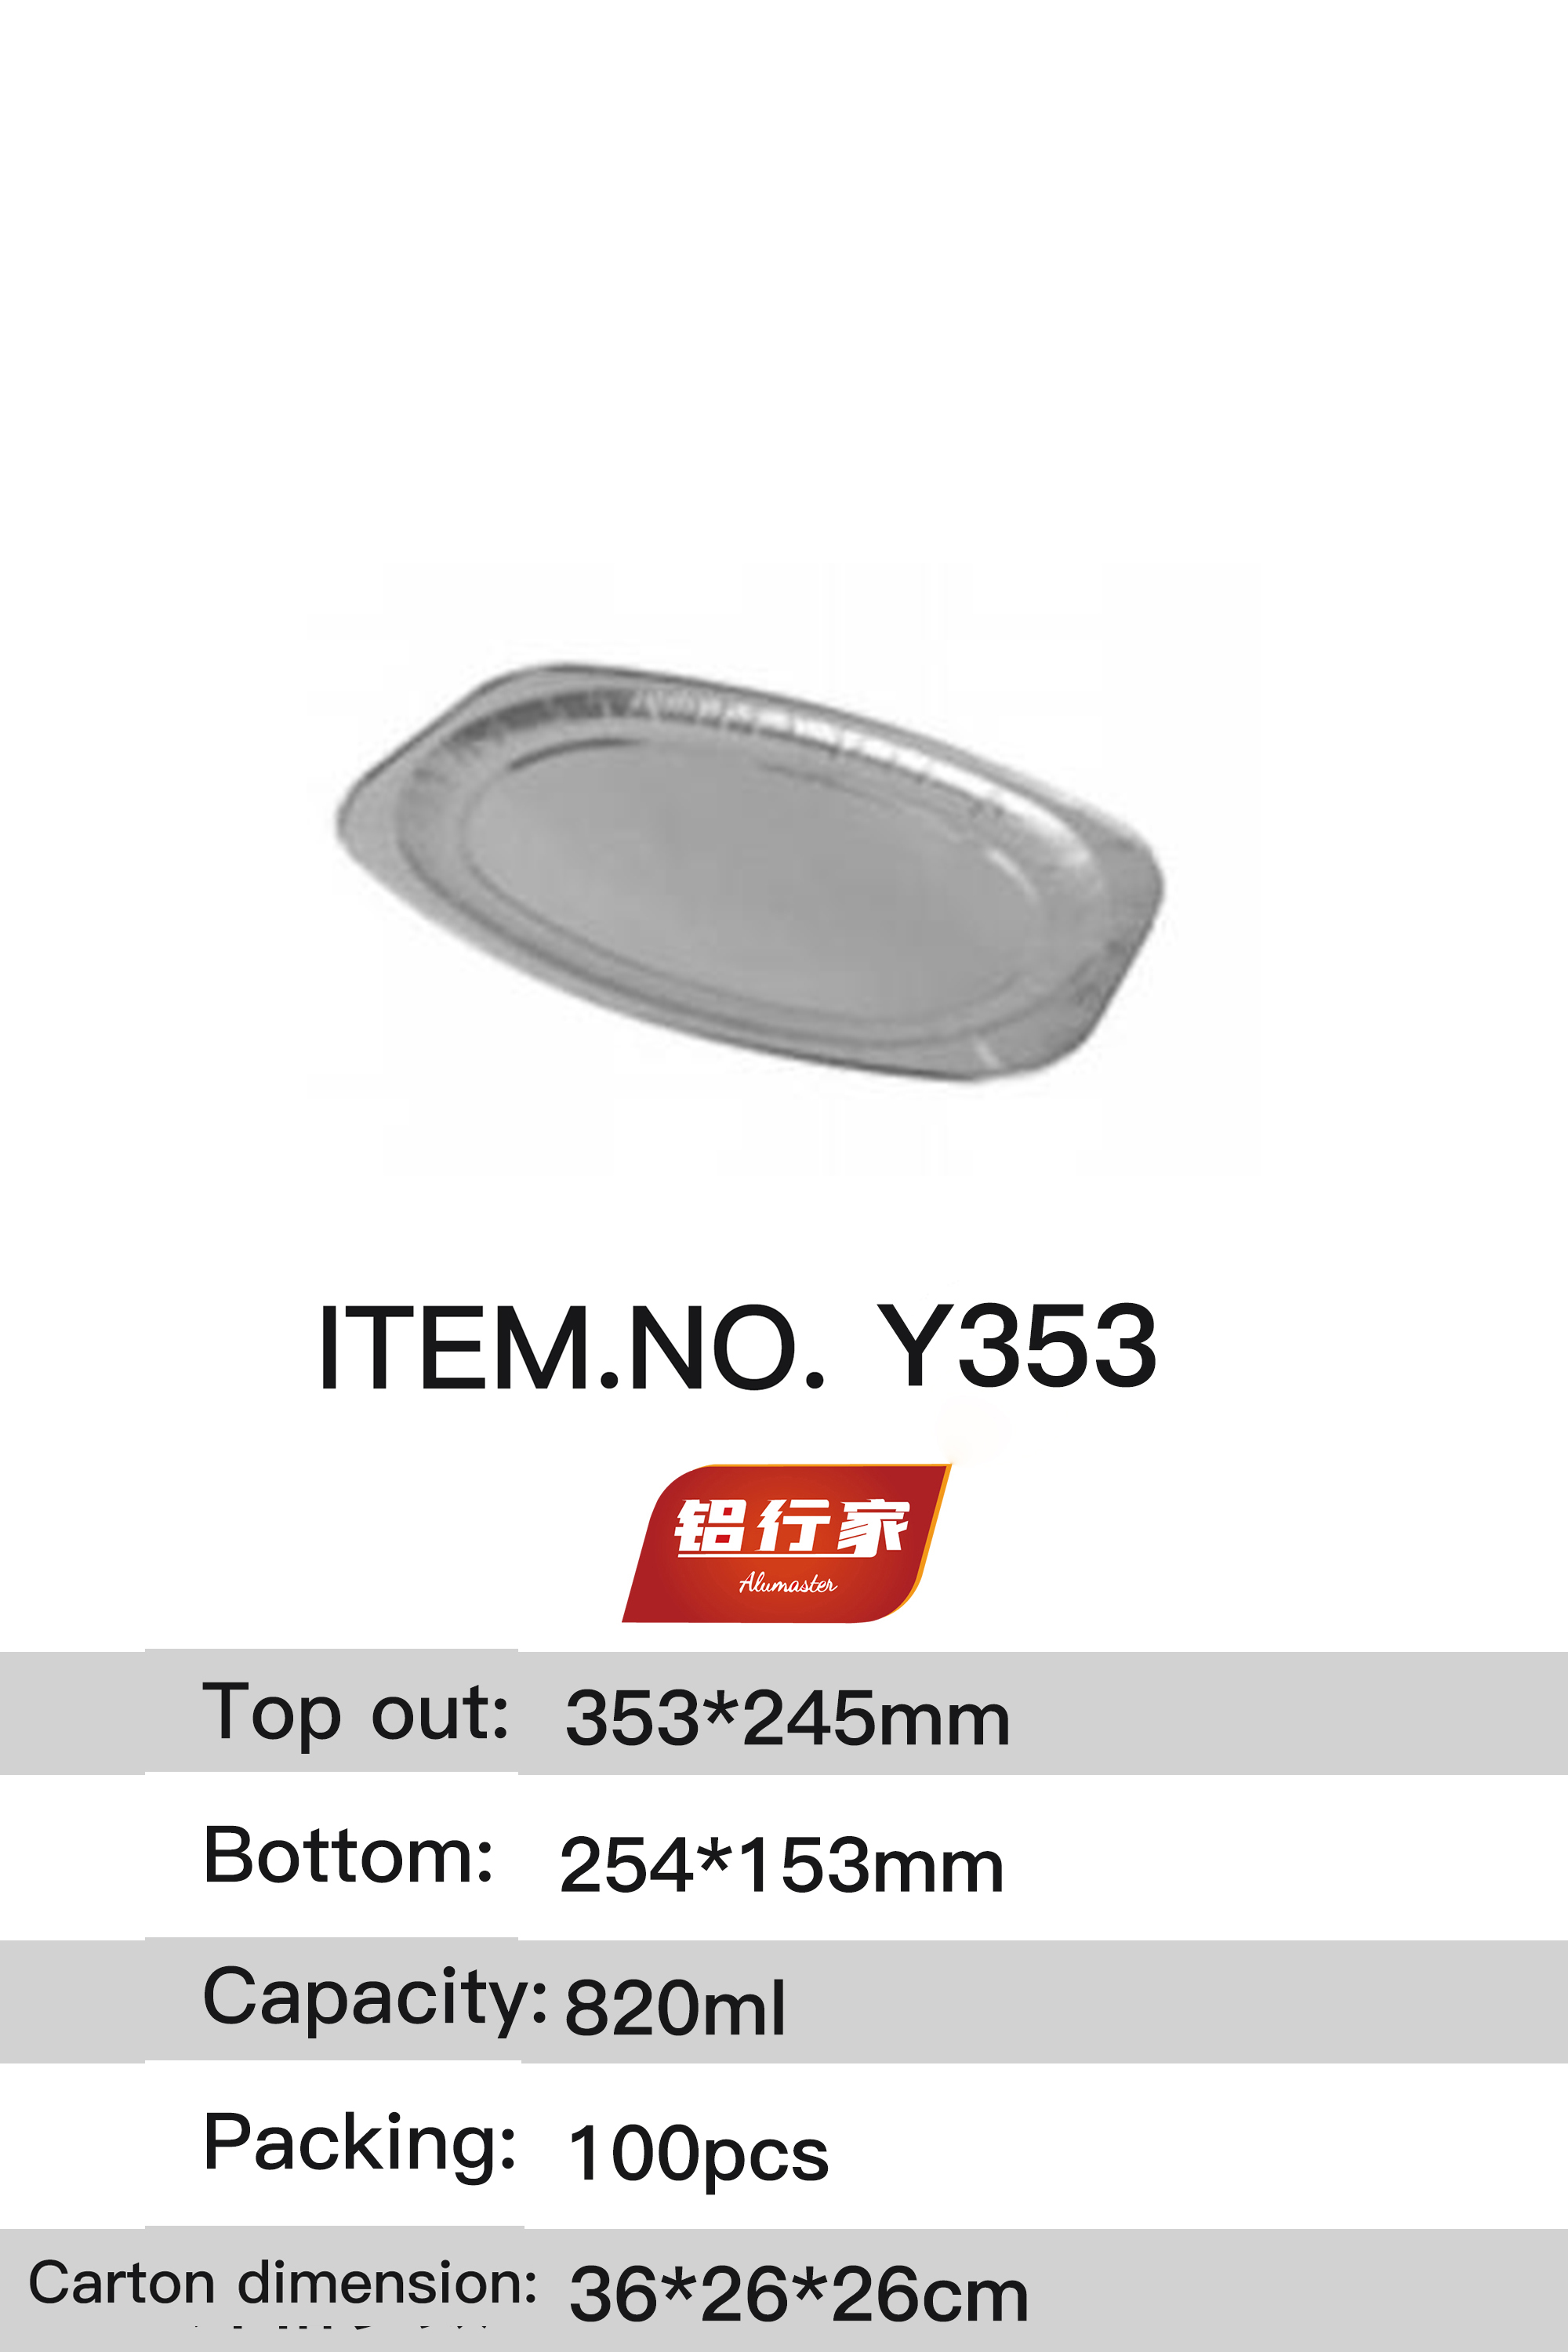 铝行家铝箔餐盒Y353